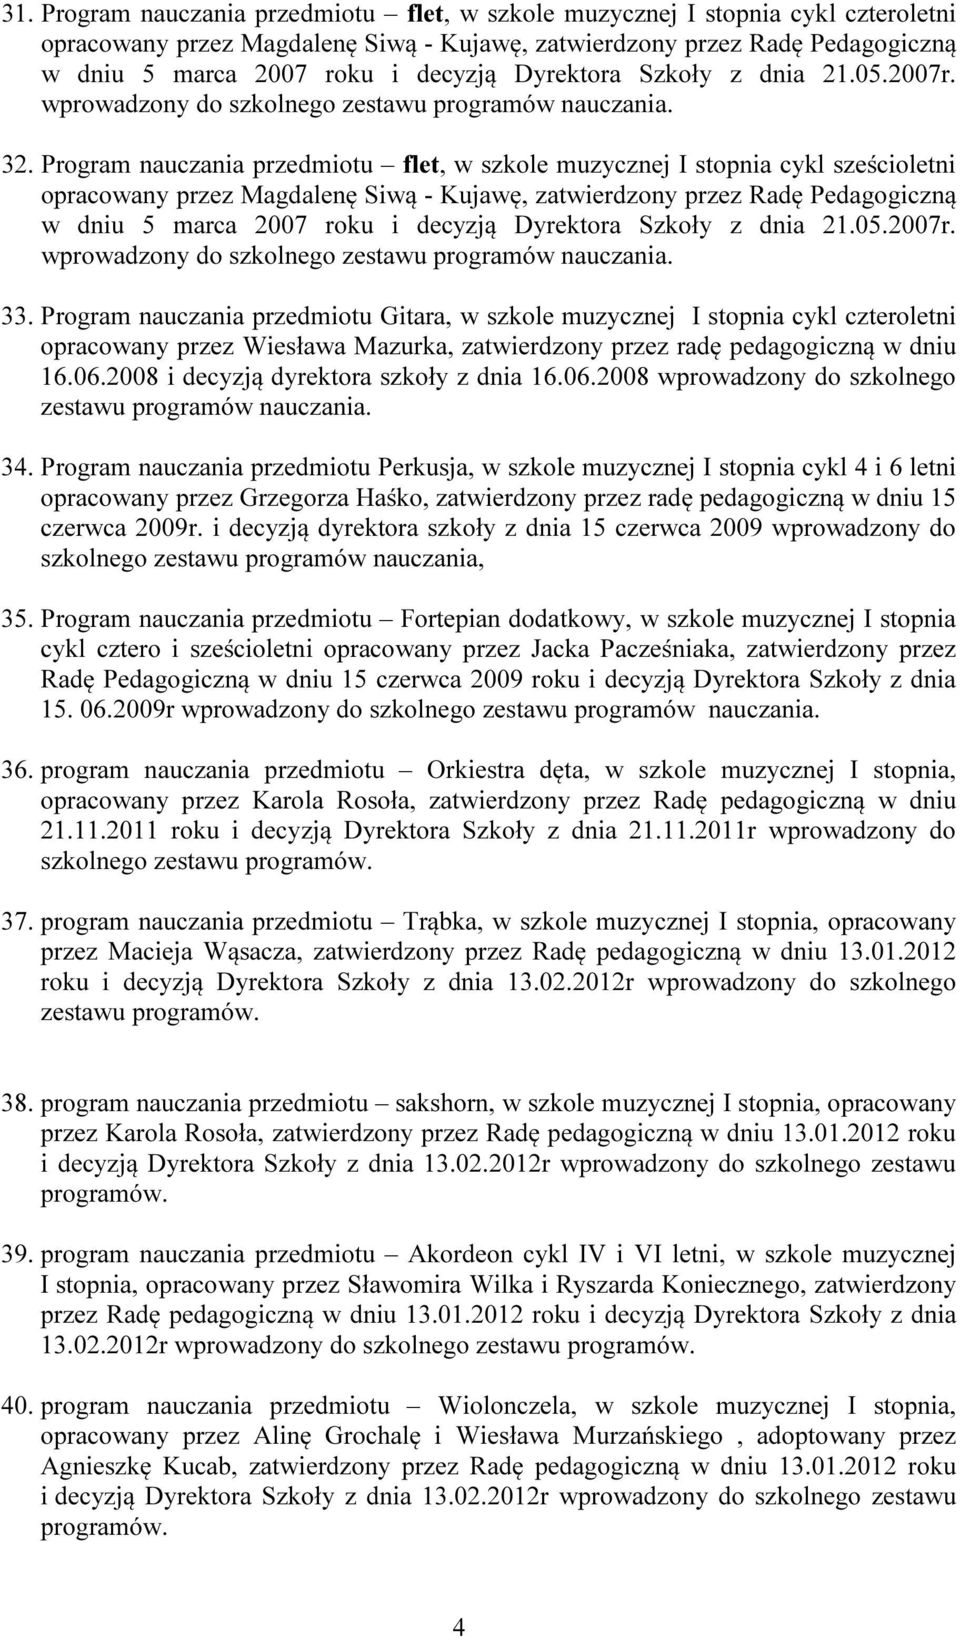 Program nauczania przedmiotu flet, w szkole muzycznej I stopnia cykl sześcioletni opracowany przez Magdalenę Siwą - Kujawę, zatwierdzony przez Radę Pedagogiczną w dniu 5 marca 2007 roku i decyzją